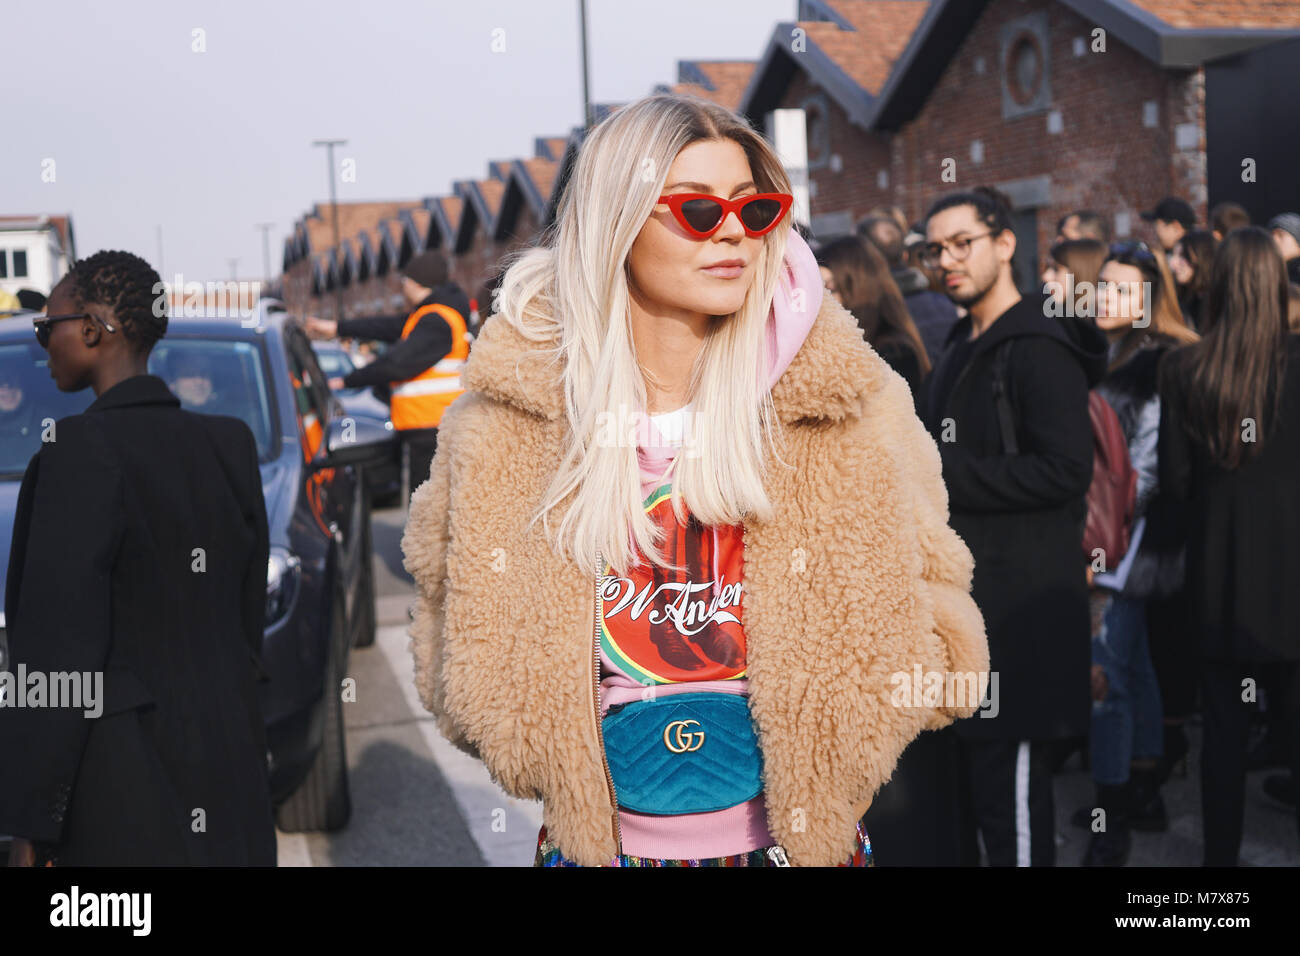 Mailand, Italien - 21. Februar 2018: Modische Mädchen nach Gucci fashion show posiert in Mailand auf der Modewoche - street style Konzept Stockfoto